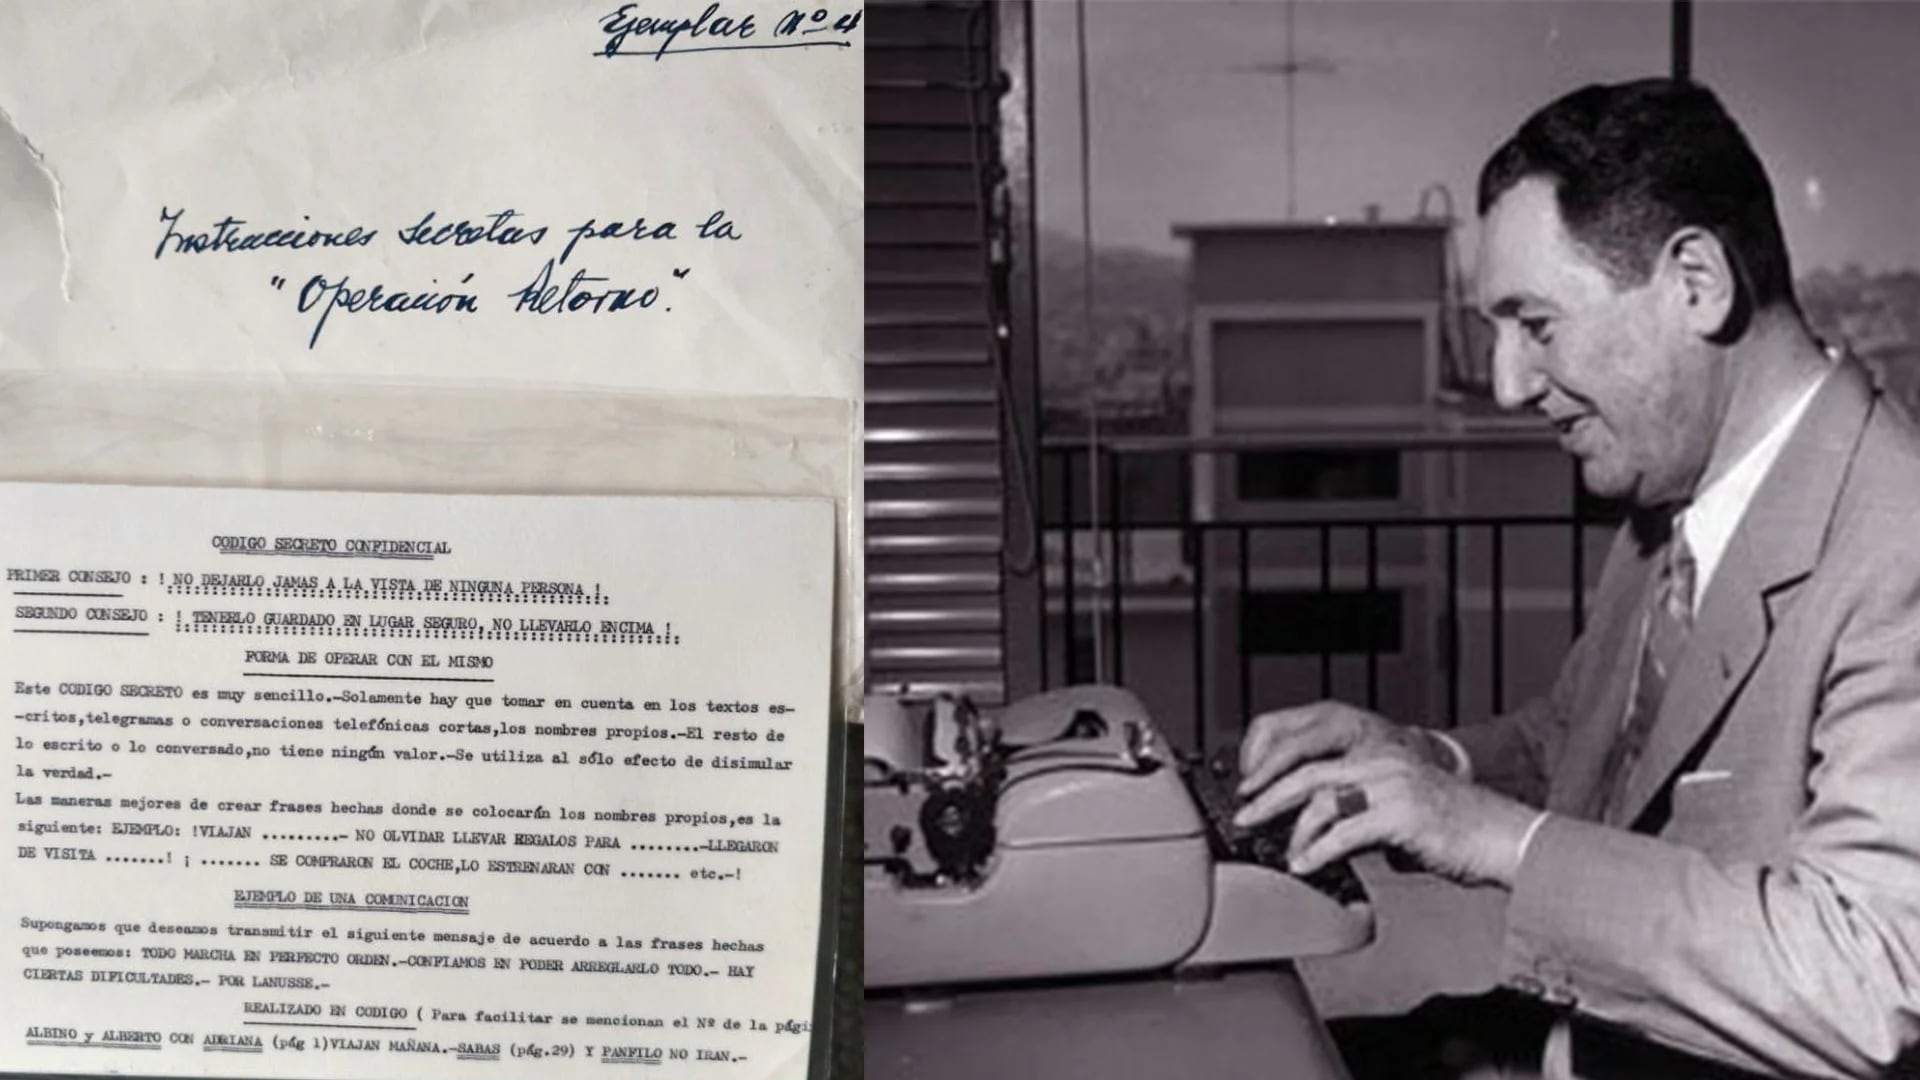 En Puerta de Hierro, Perón elaboró un “código secreto confidencial” para comunicarse con sus seguidores en Argentina